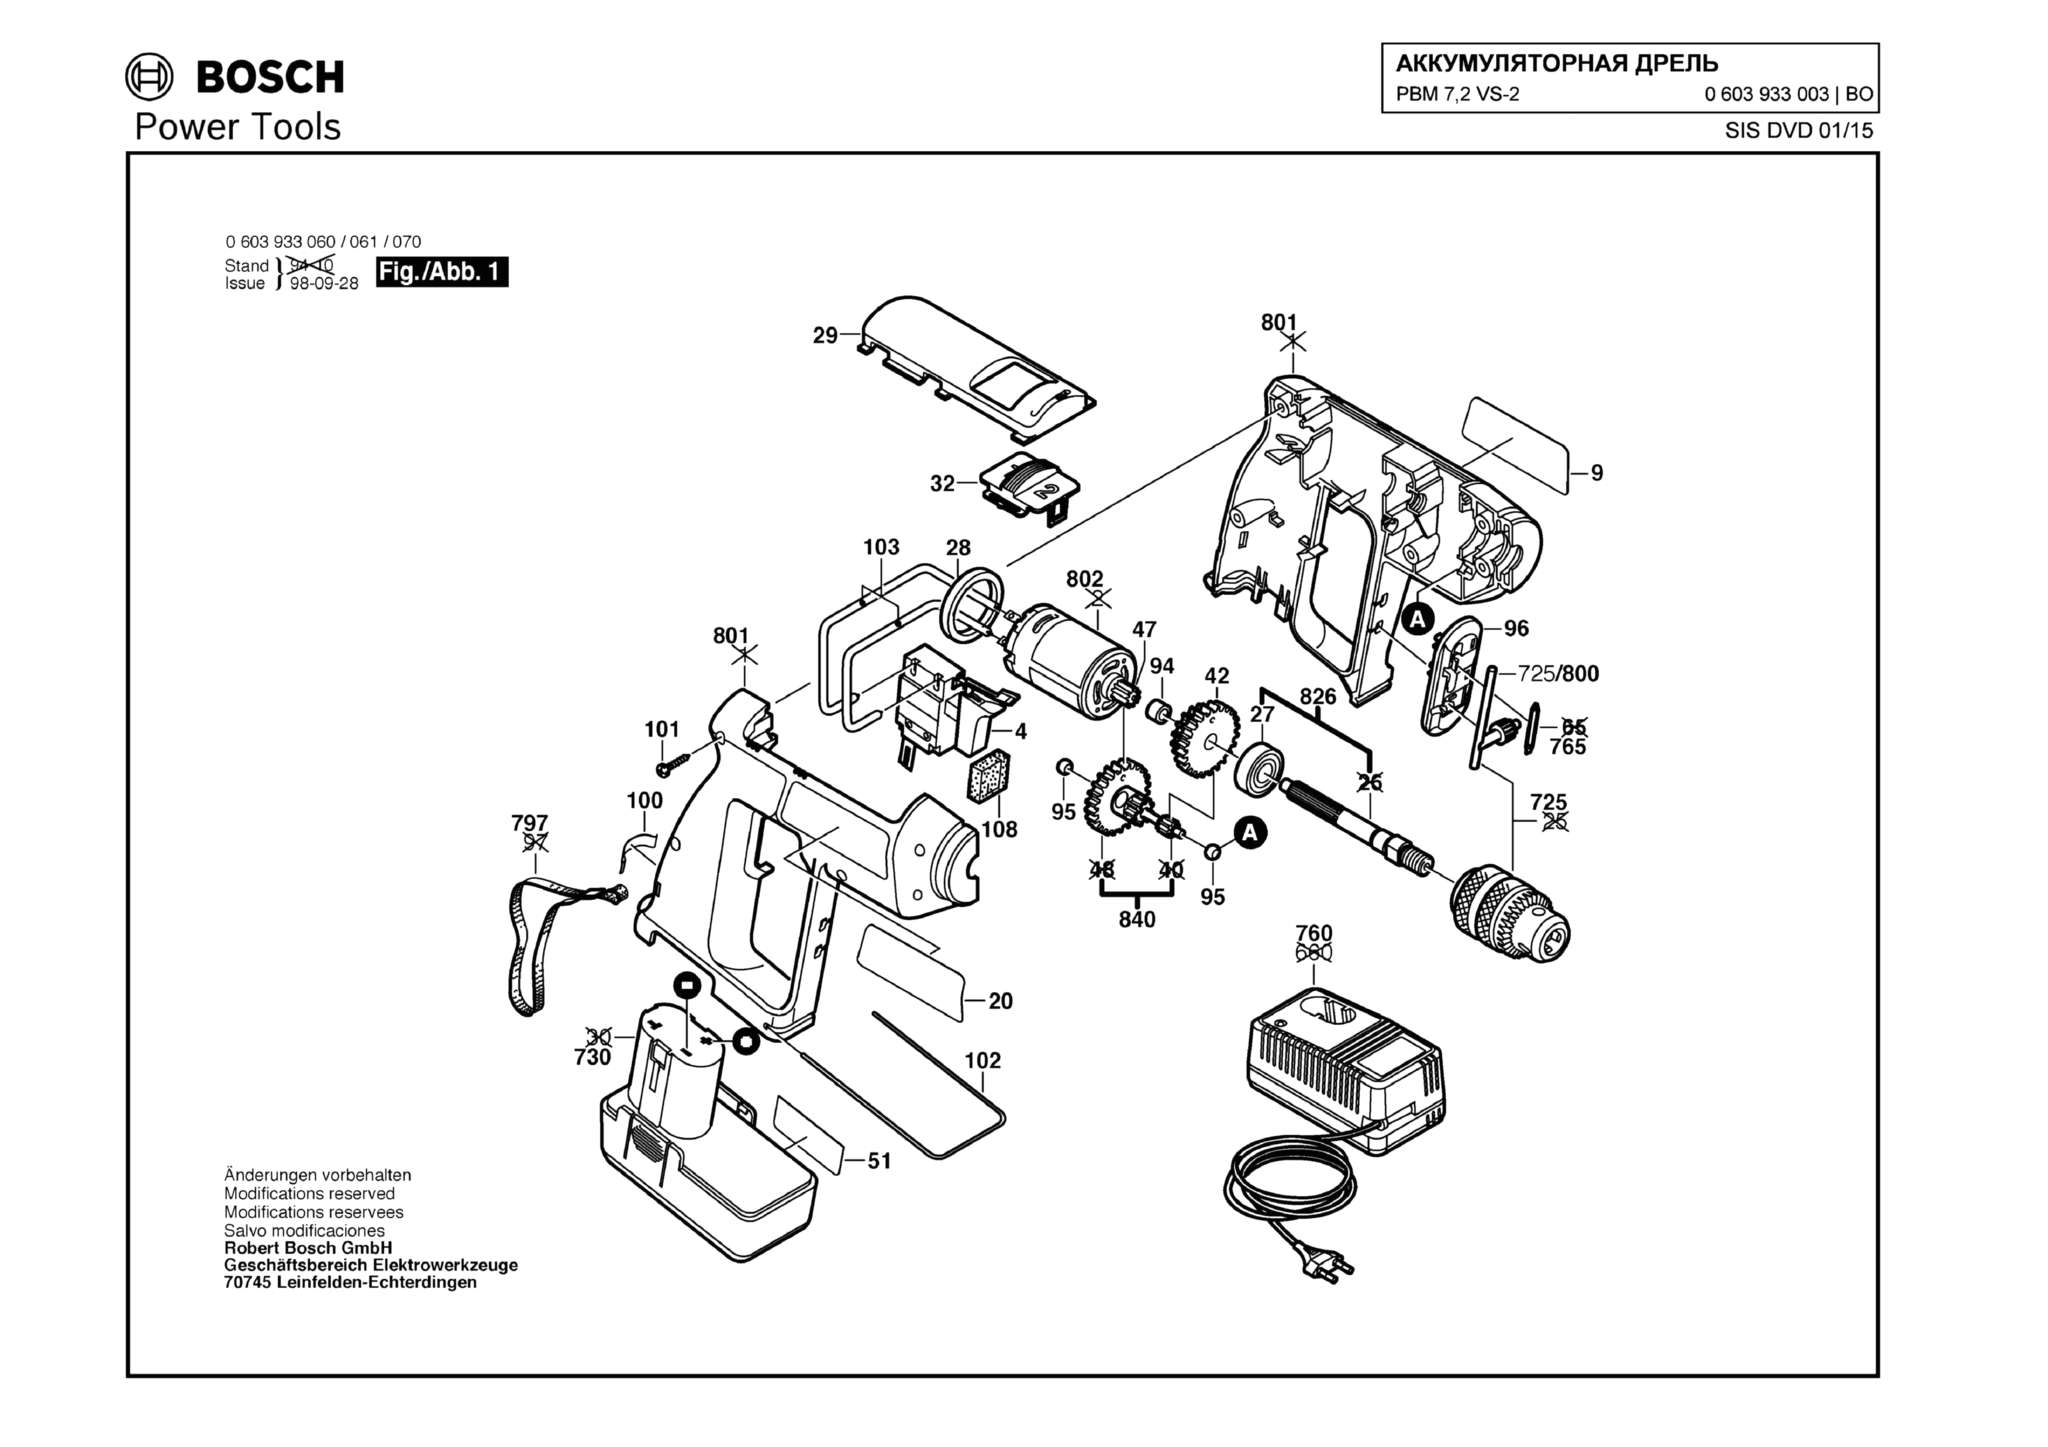 Запчасти, схема и деталировка Bosch PBM 7,2 VS-2 (ТИП 0603933003)